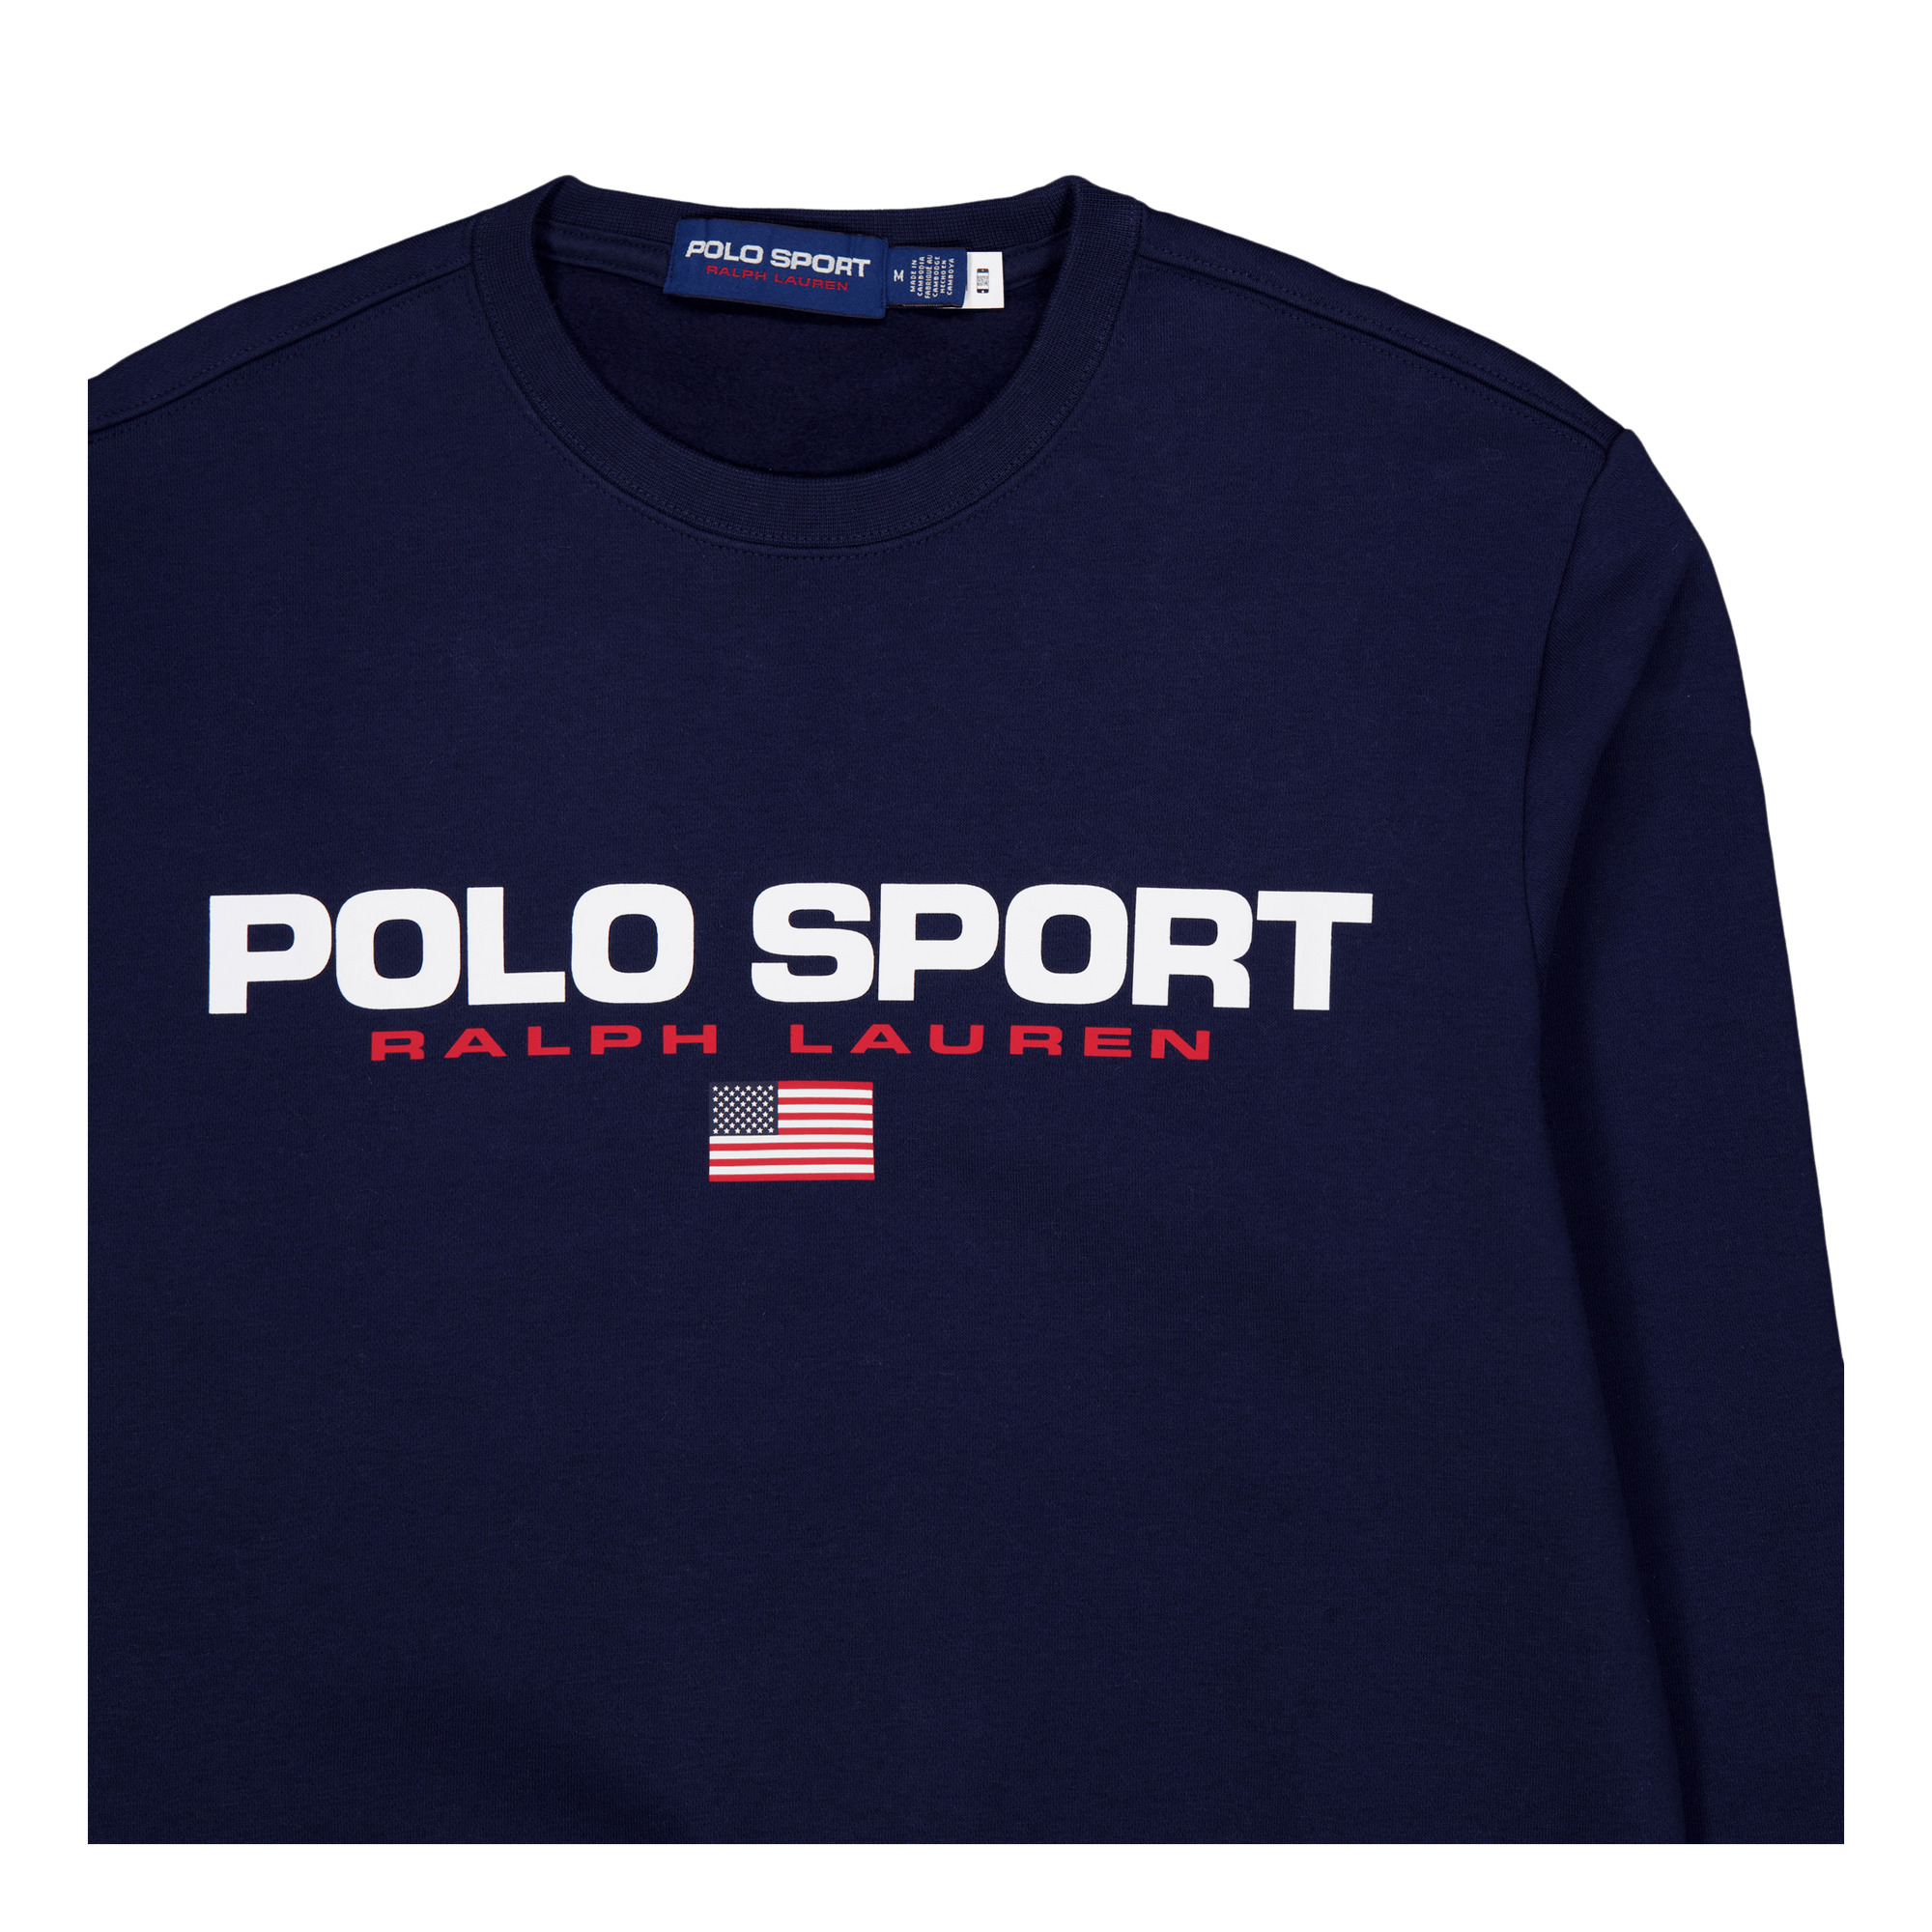 Polo Sport Fleece Sweatshirt Cruise Navy/White